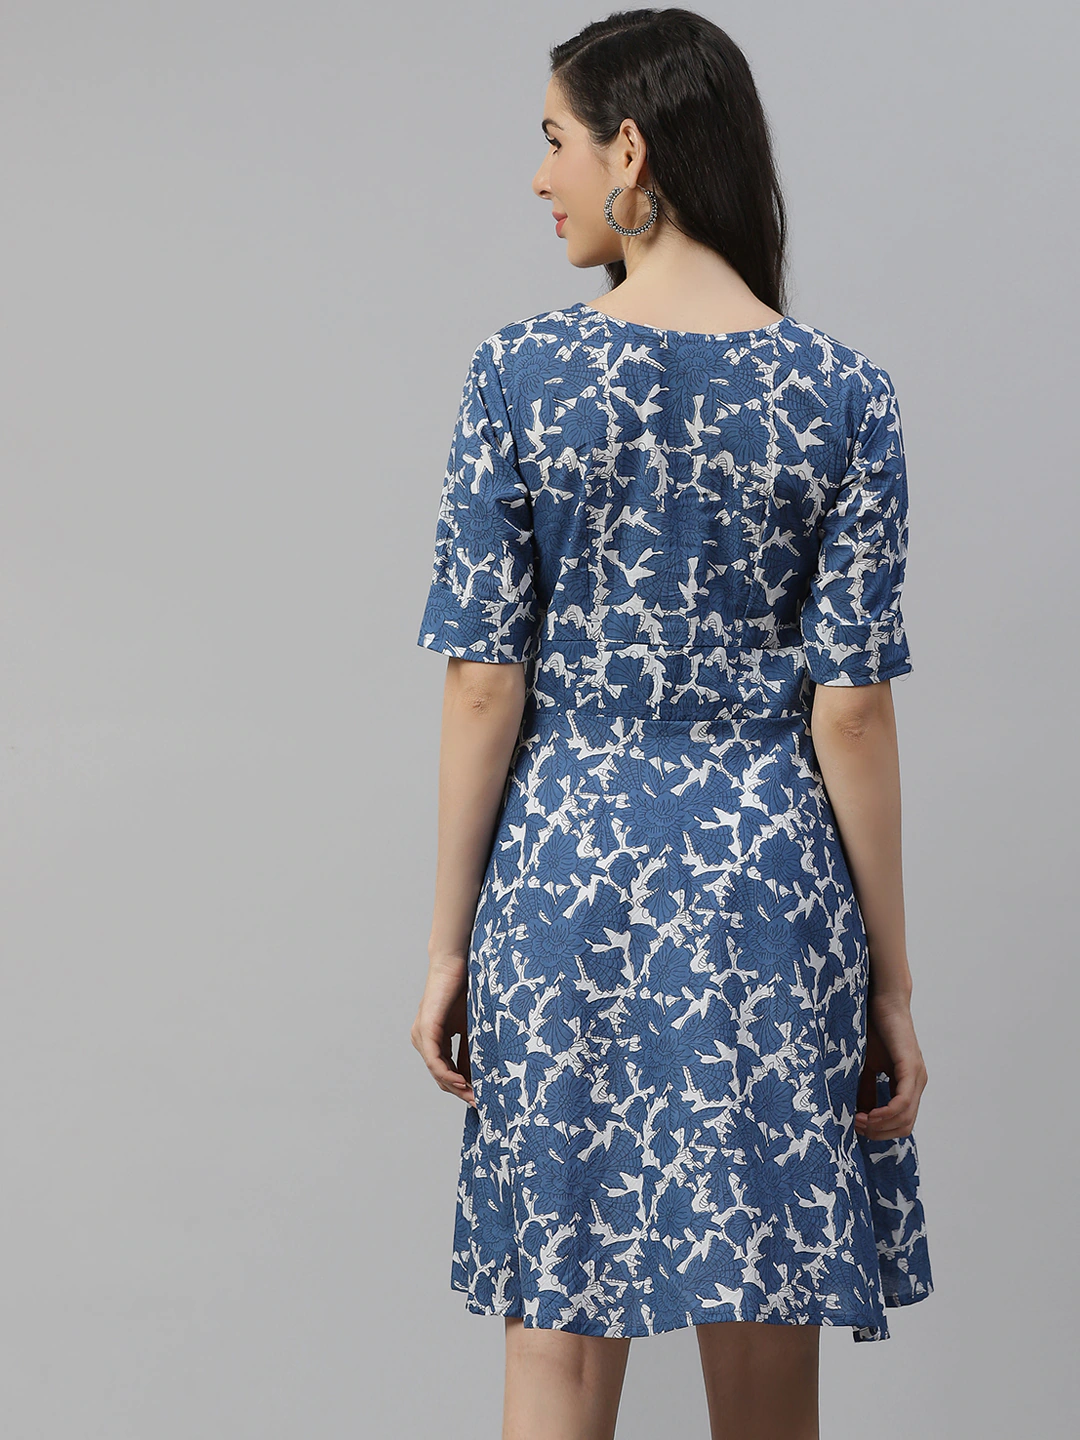 Women's Indigo Print Knee Length Dress - Divena